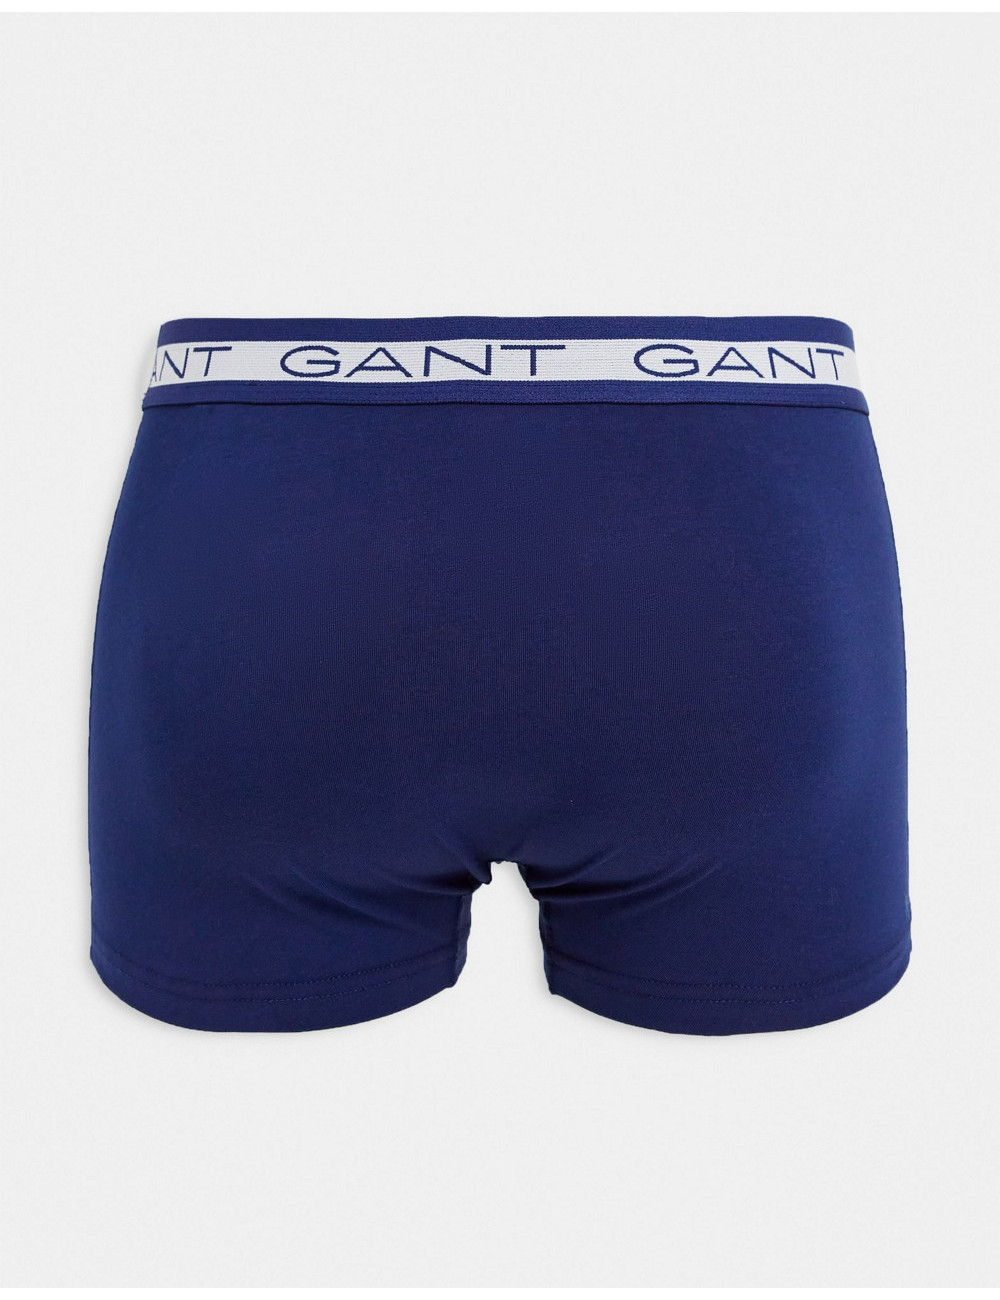 GANT 3 pack trunks in blue...